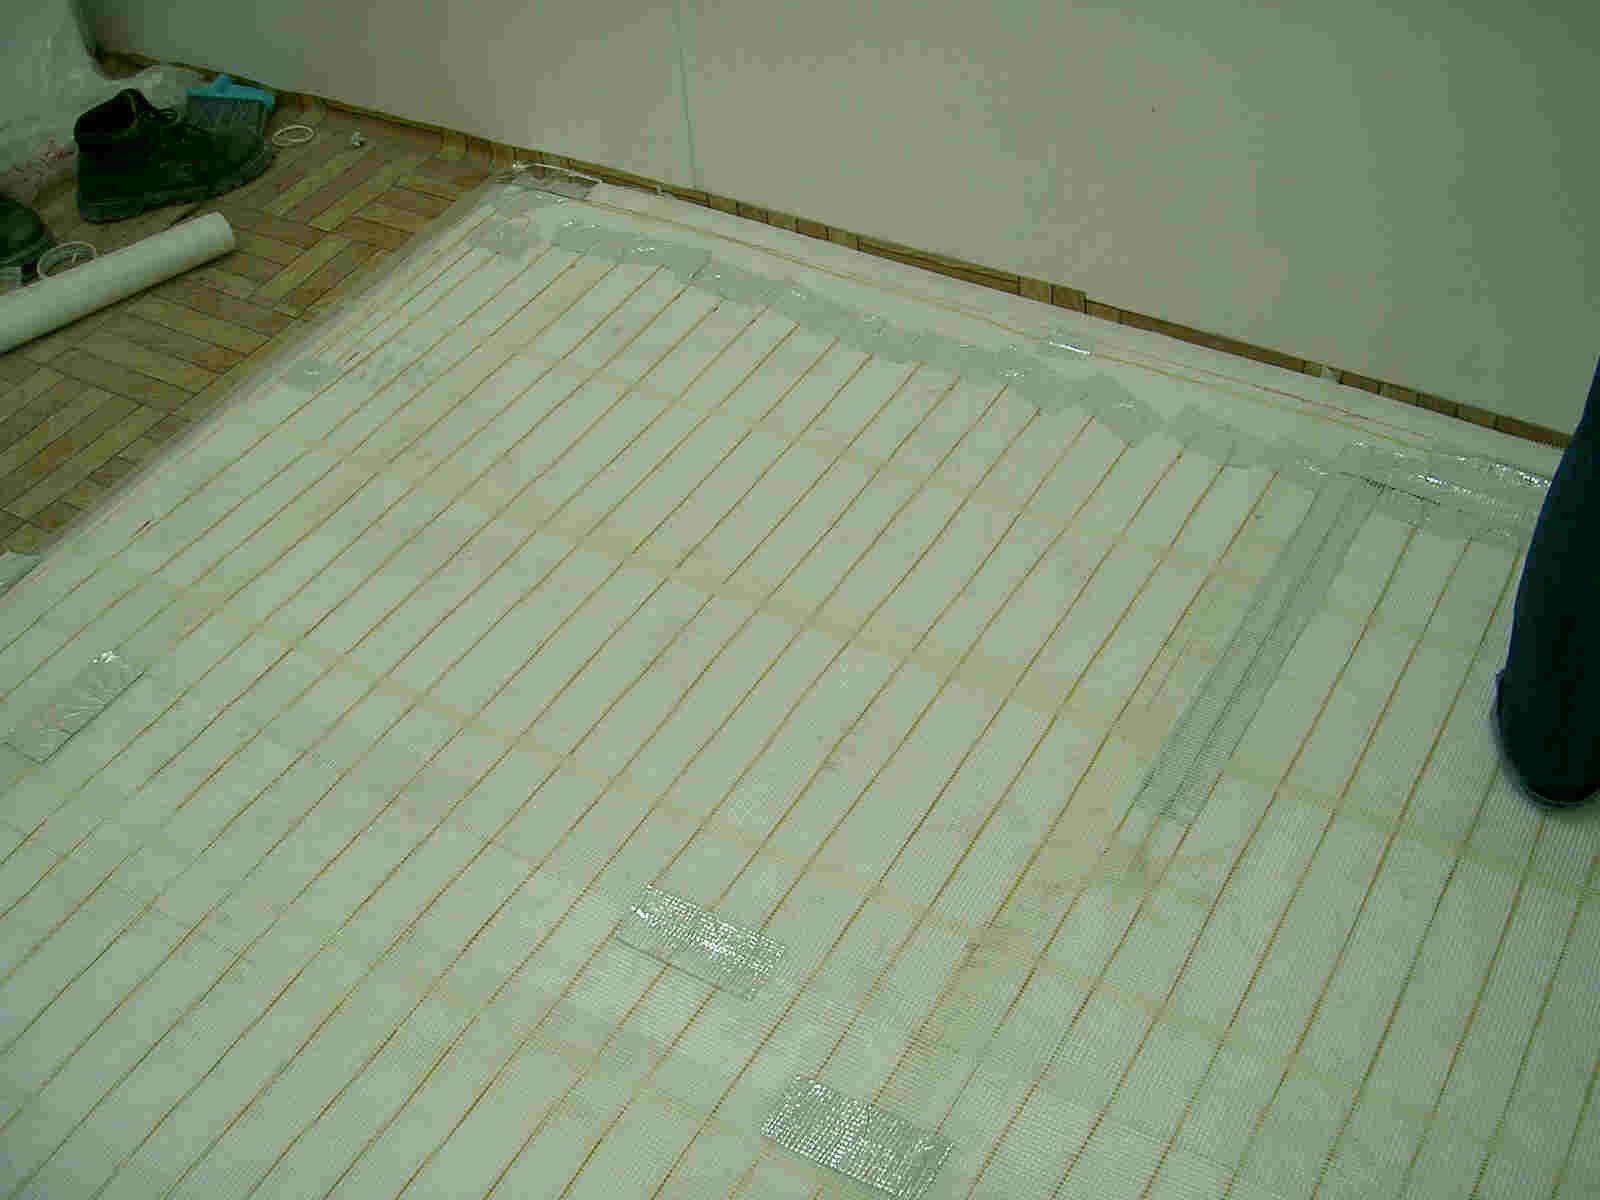 qxOAoaOAaxtΡAfloor heating, floor warming, heating pad, heating mat